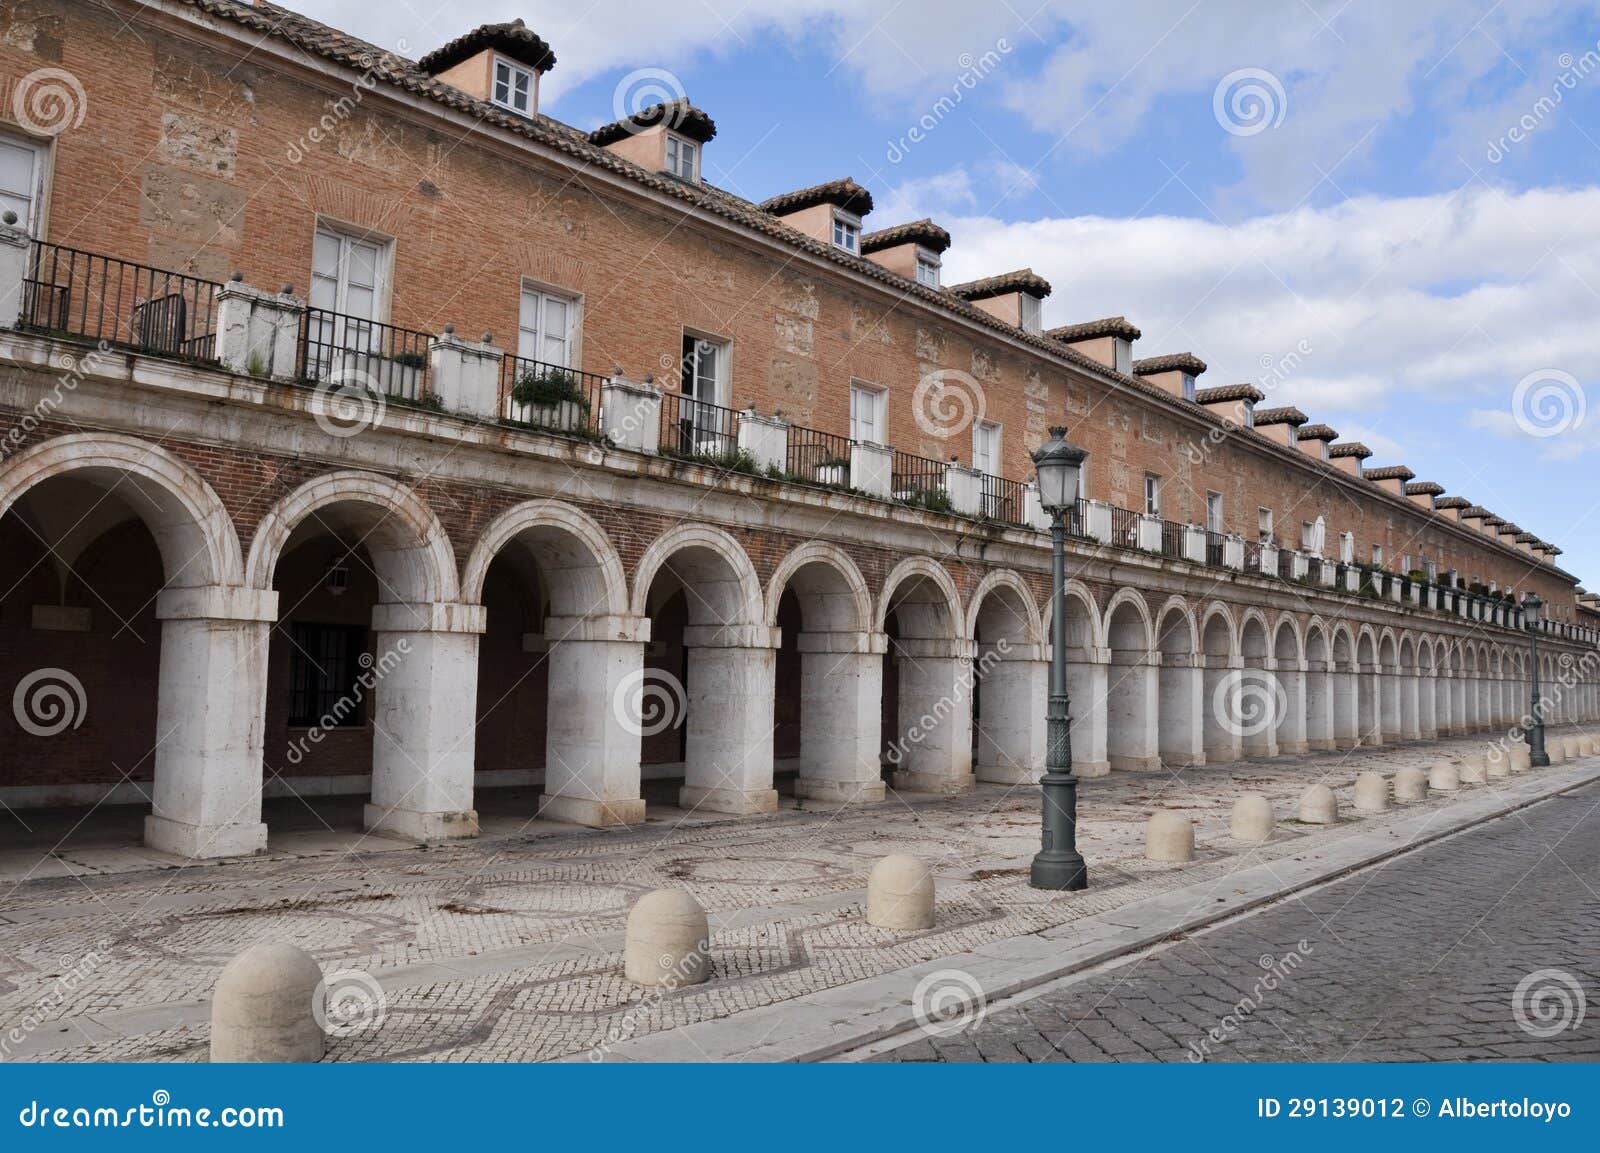 colonnade in casa de los oficios palace, aranjuez (spain)